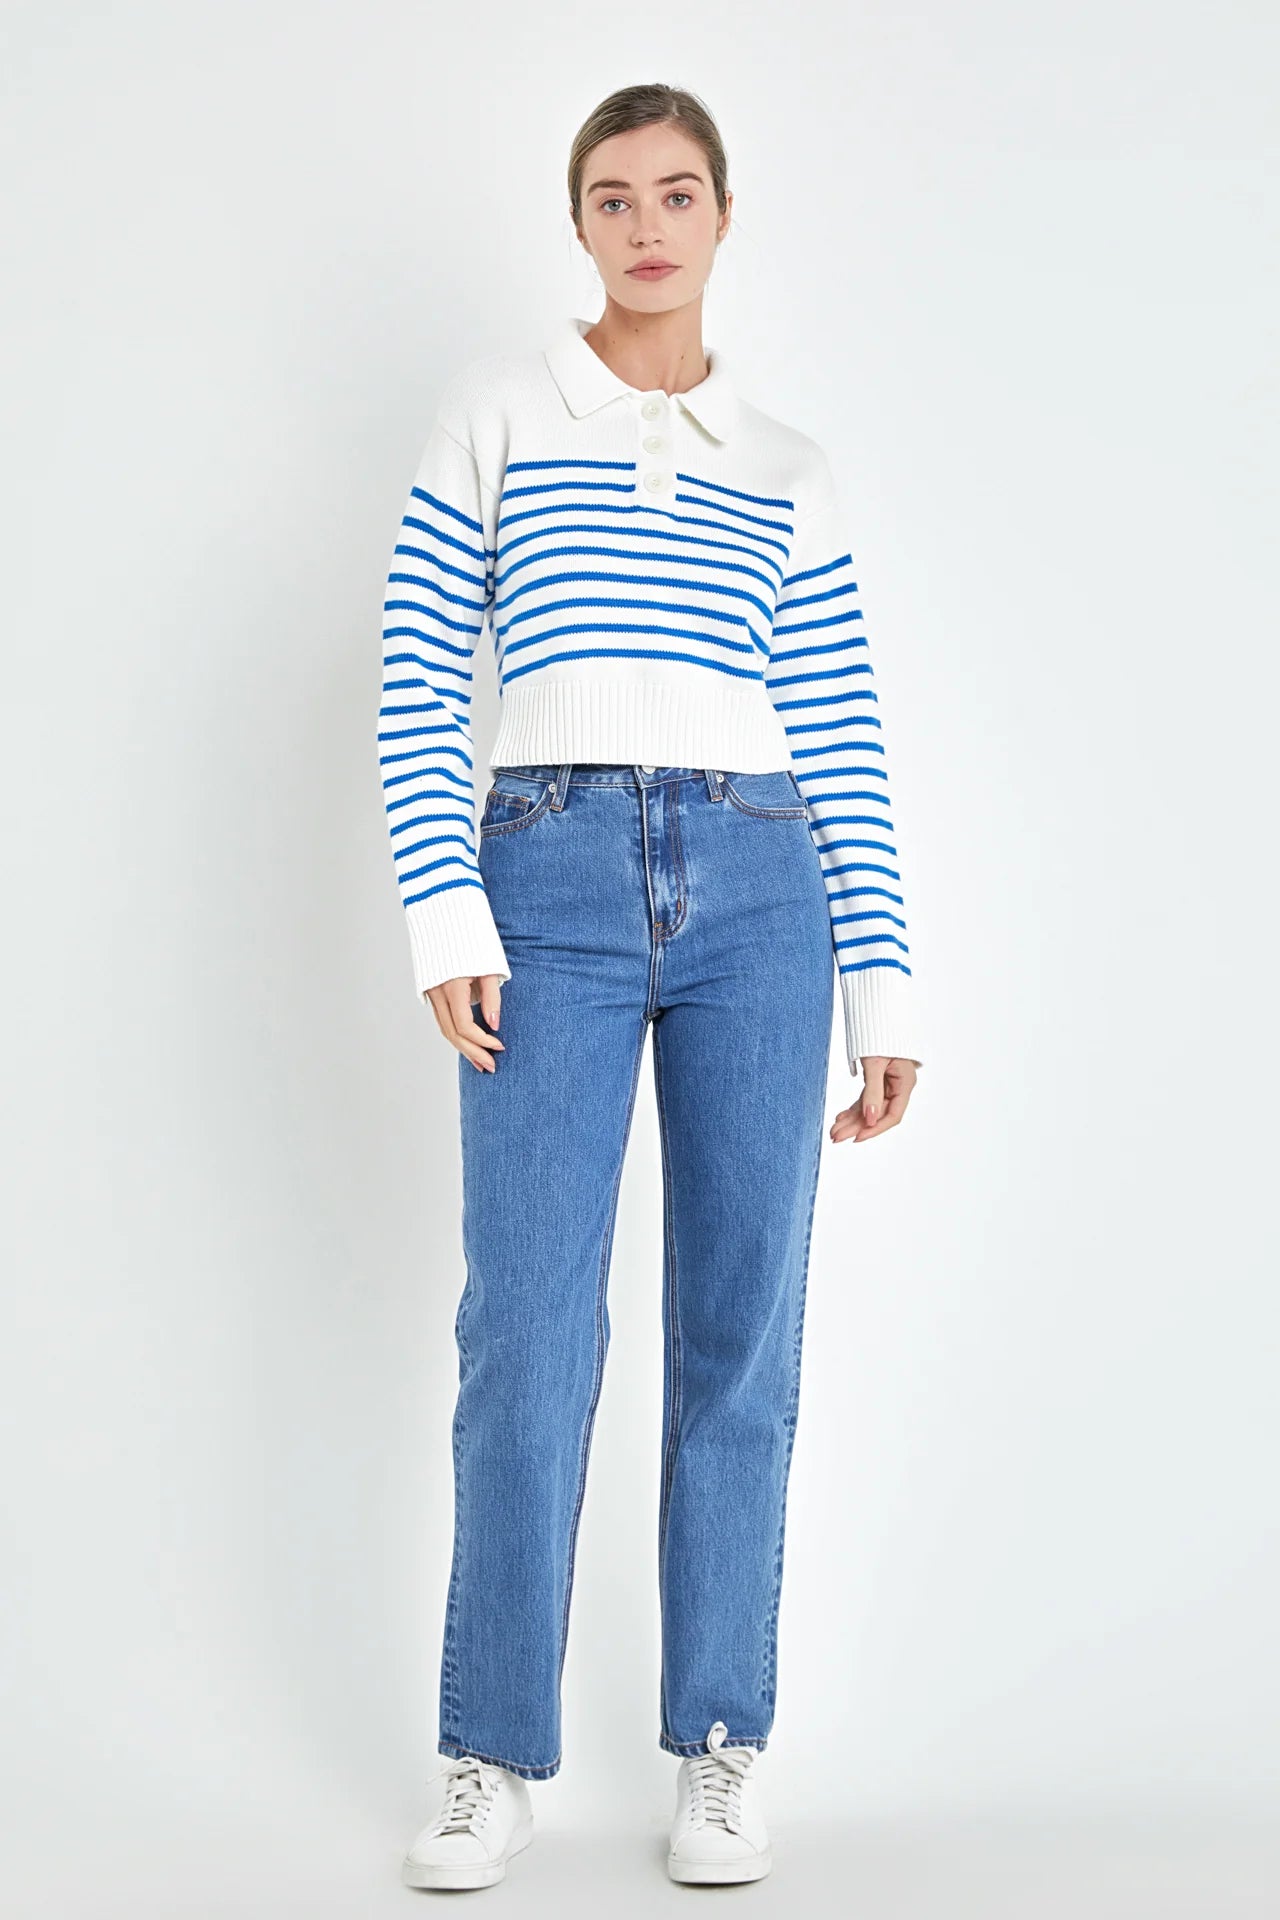 Stripe Knit Top | White/Blue